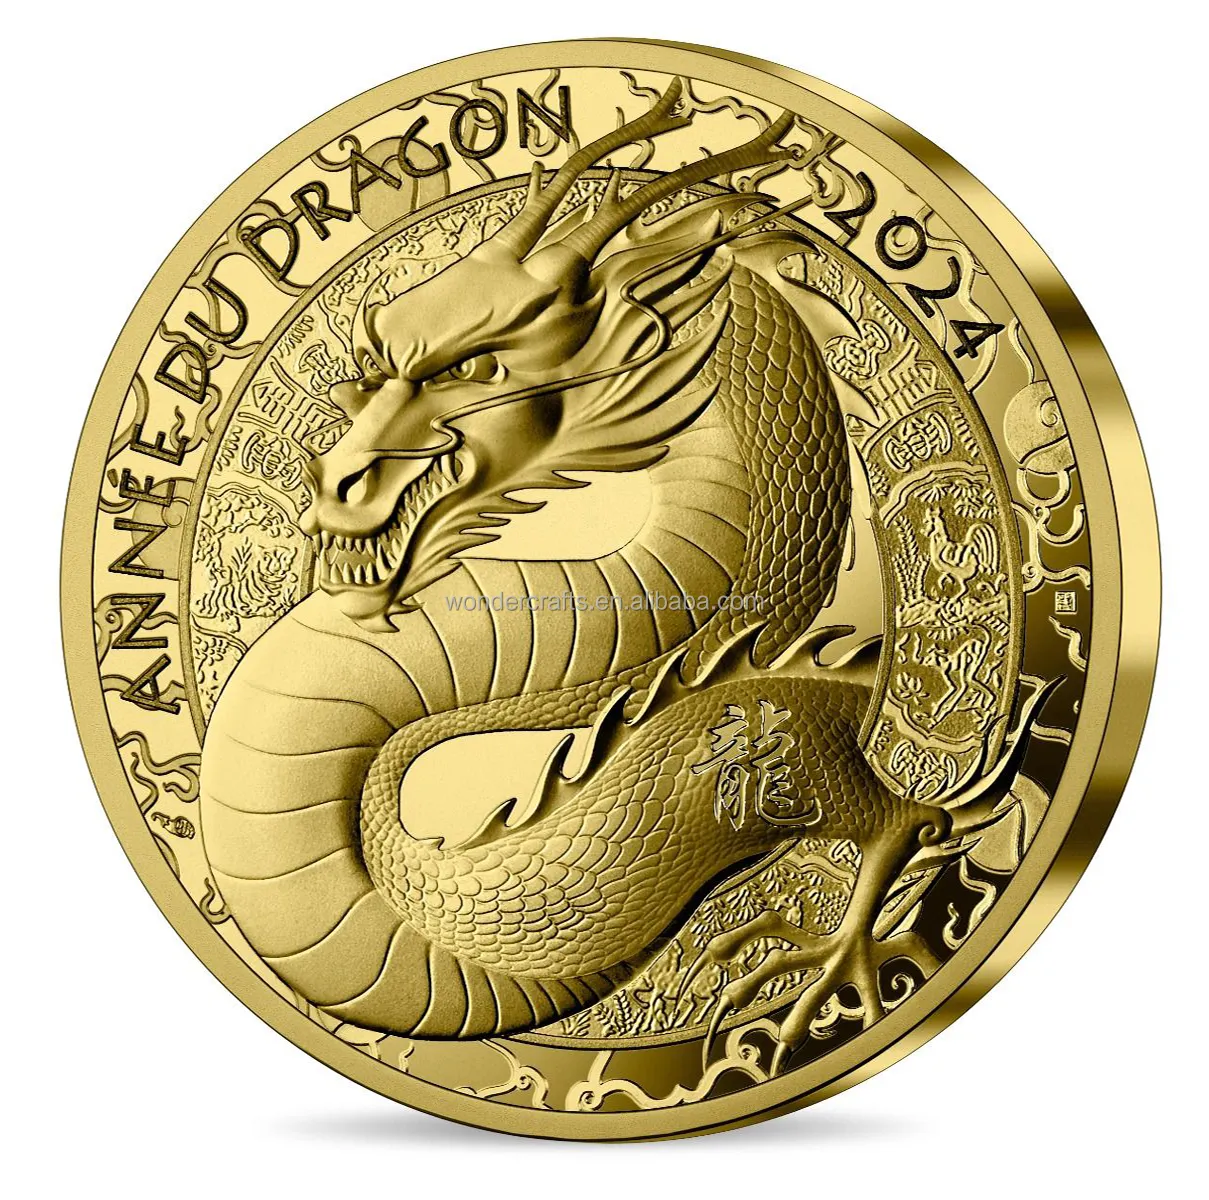 WD personalizado oro plata Cobre 40mm espejo lateral enjoyado dragón Zodiaco monedas conmemorativas del Año del Dragón